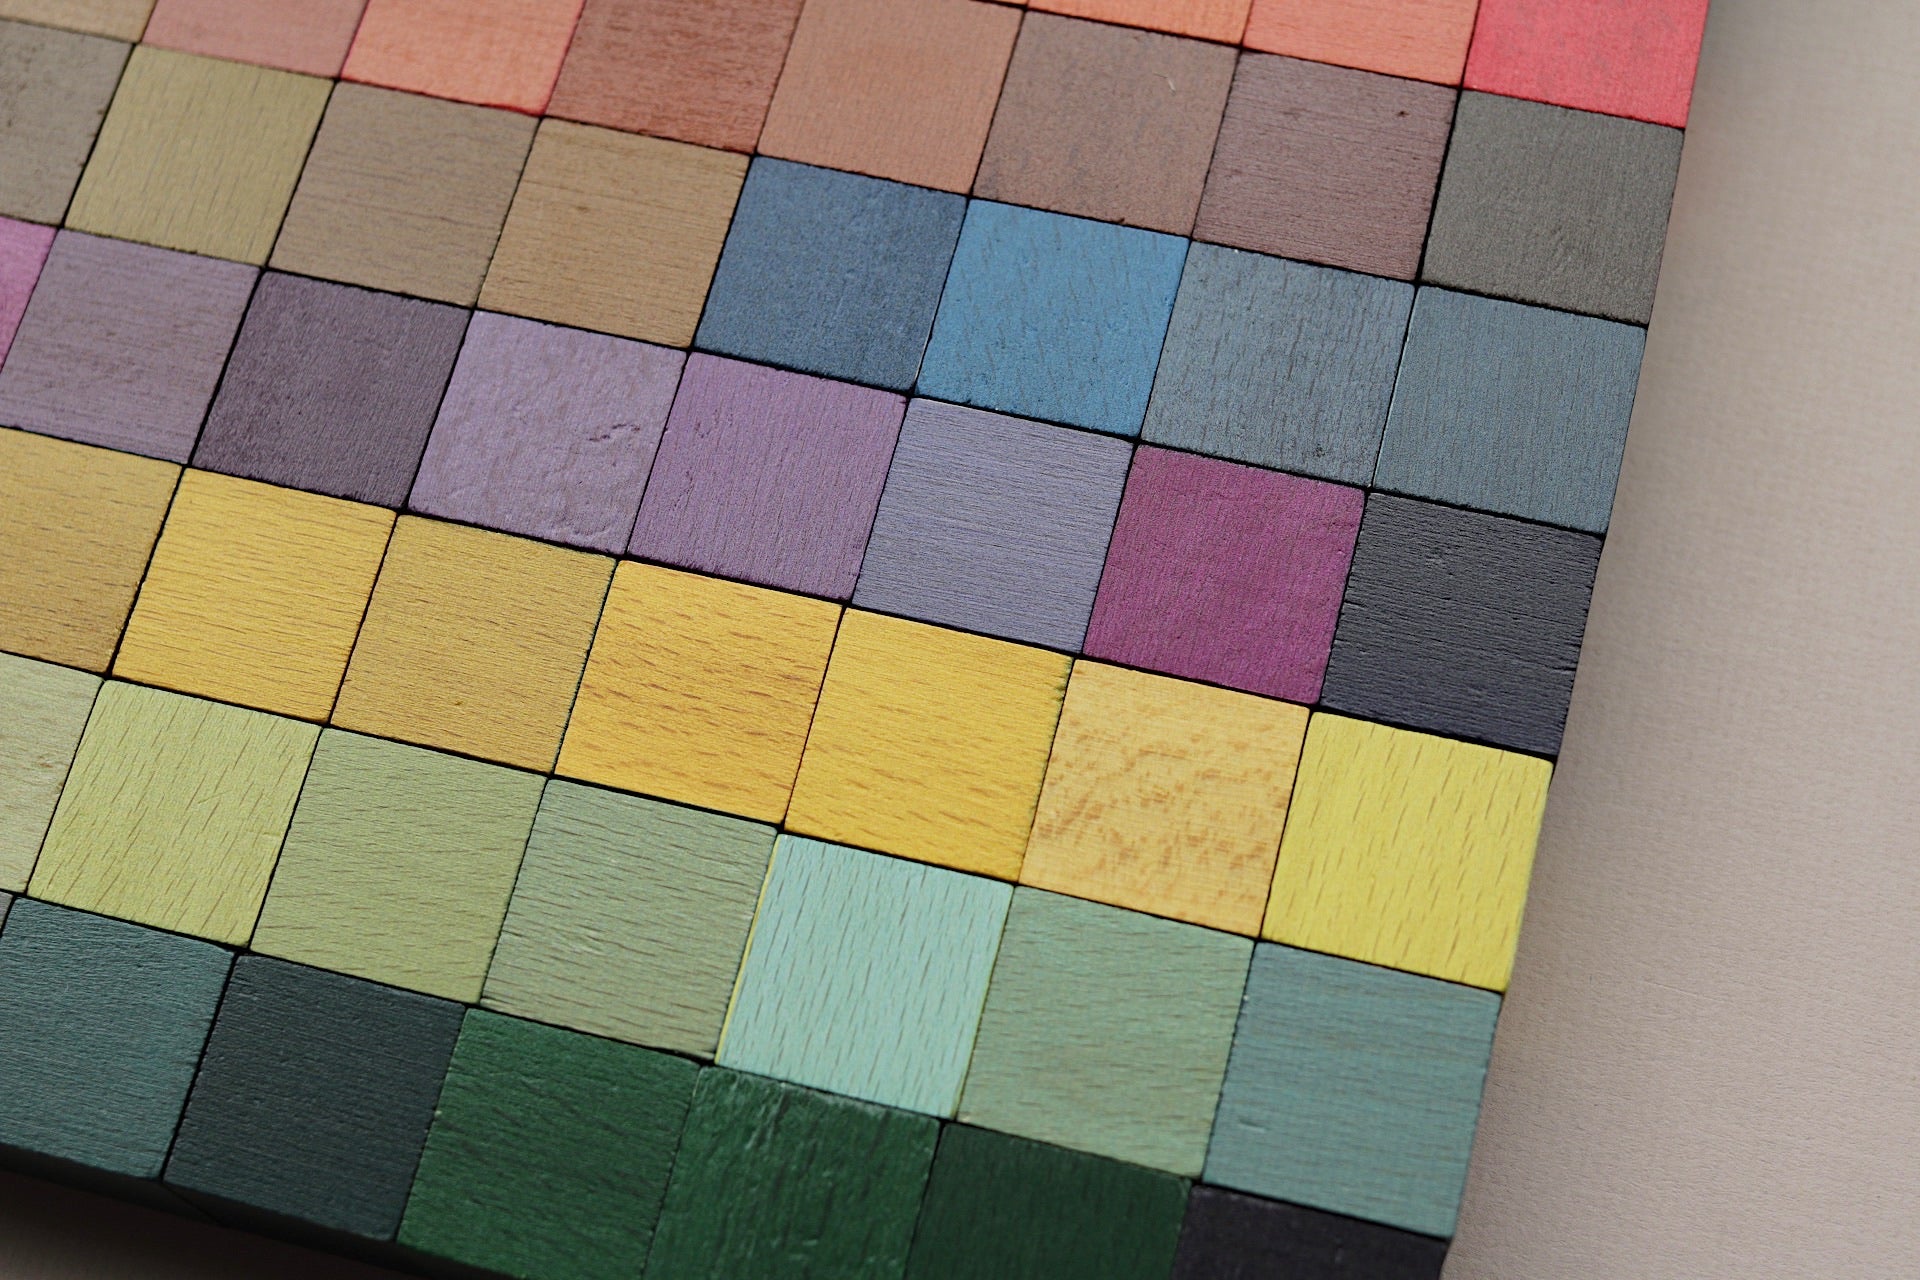 Colour Palette Block Set - 100 cubes